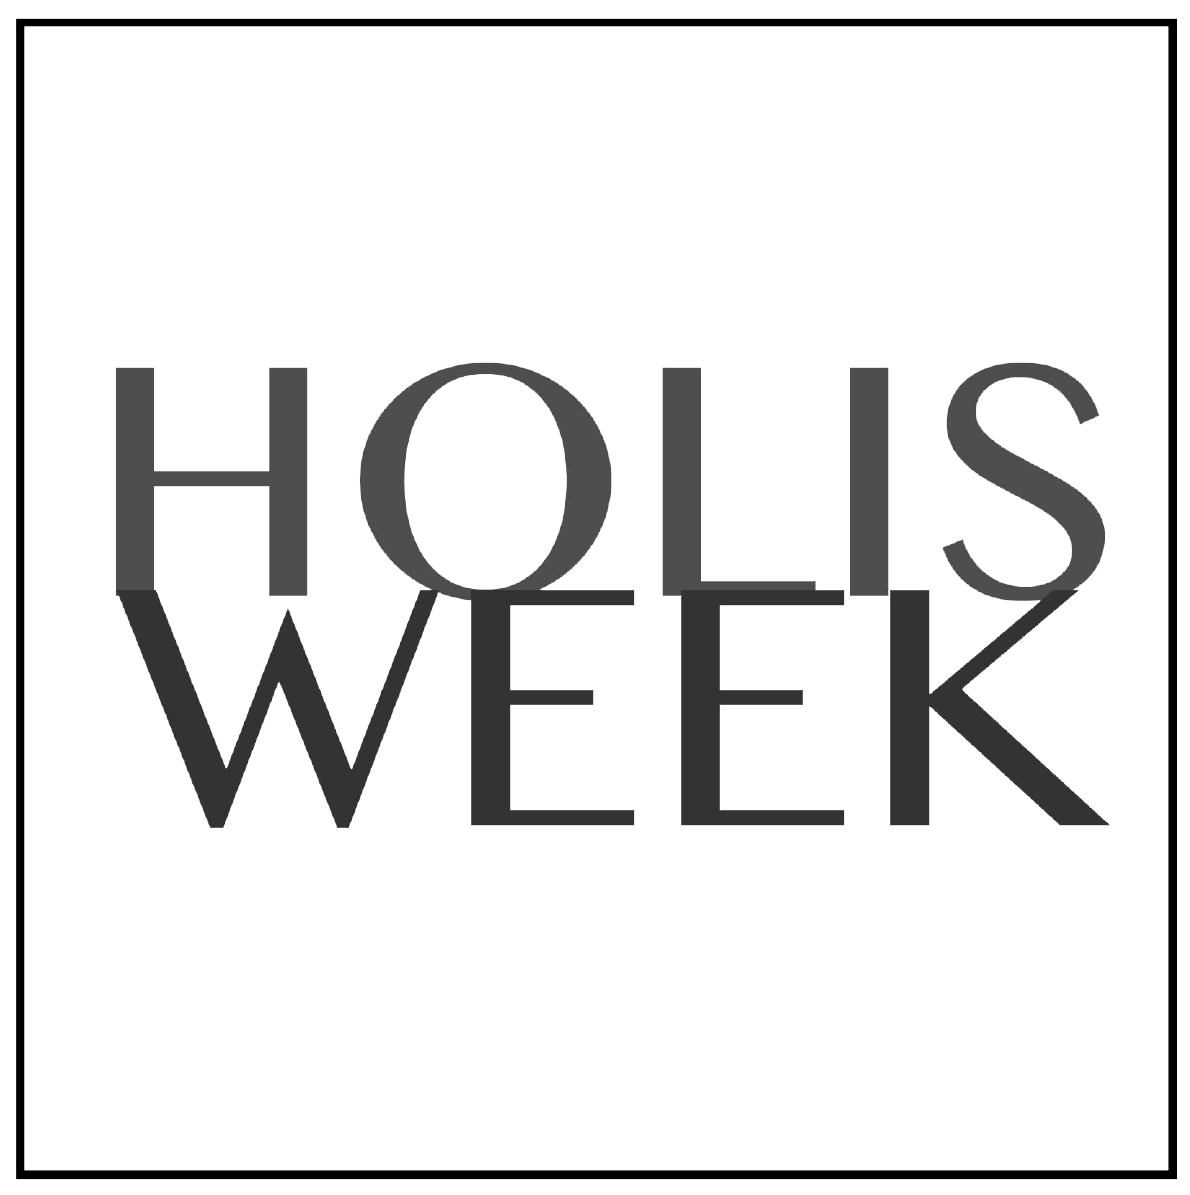 Logo Holis Week